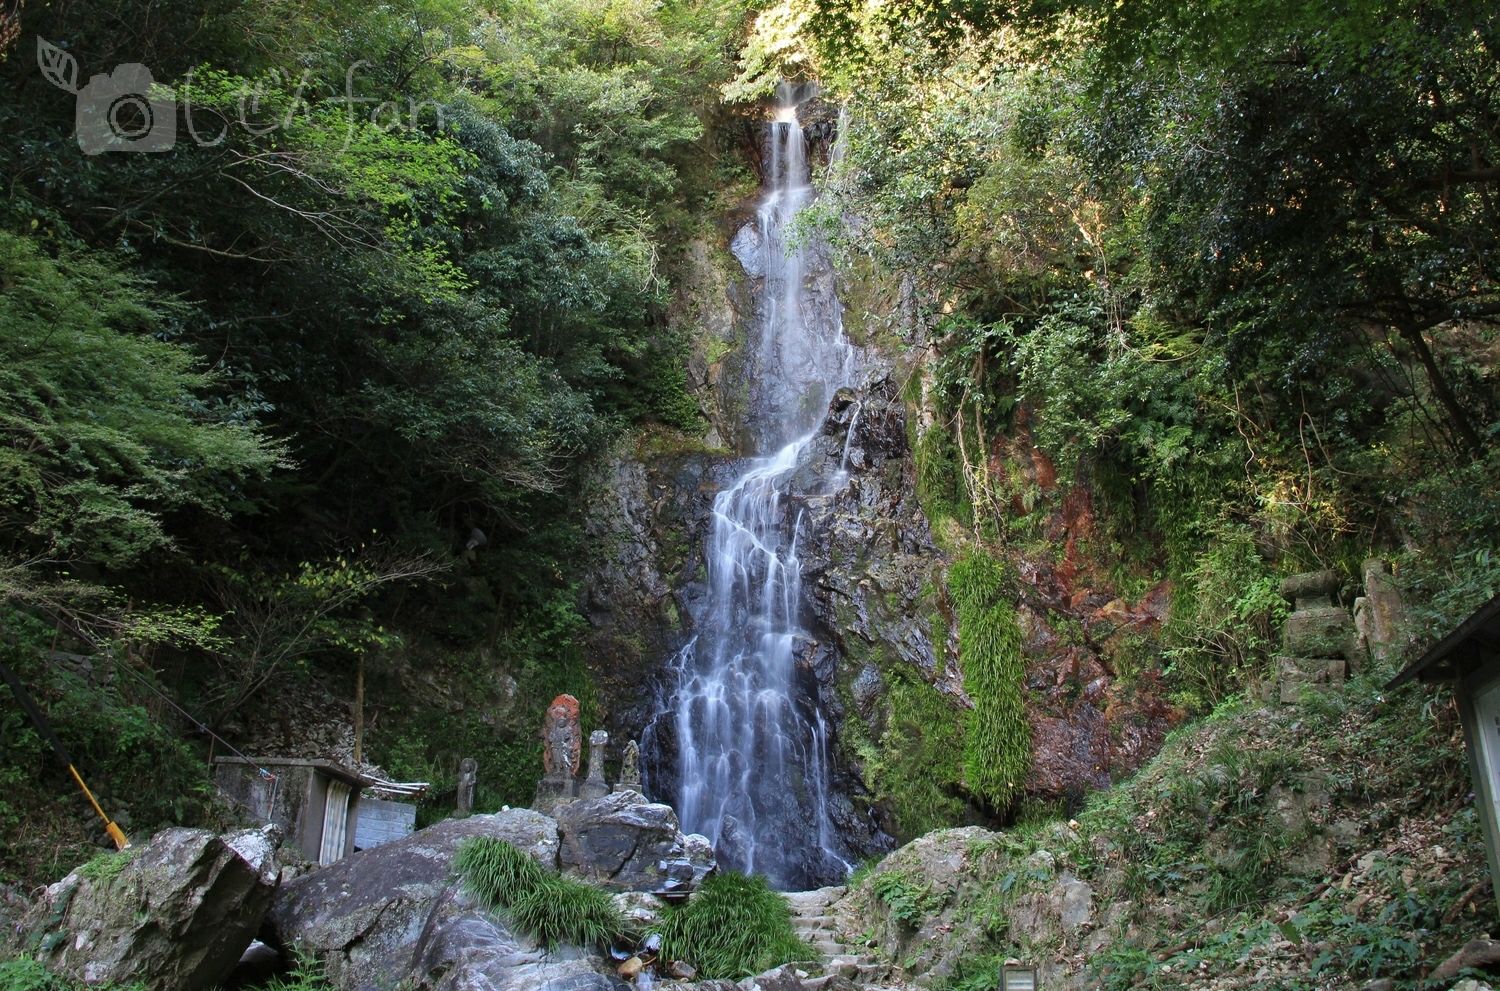 自然名所レポート 6 名水百選 清水の滝と清水観音 佐賀県小城市 ページ 2 しぜんfan